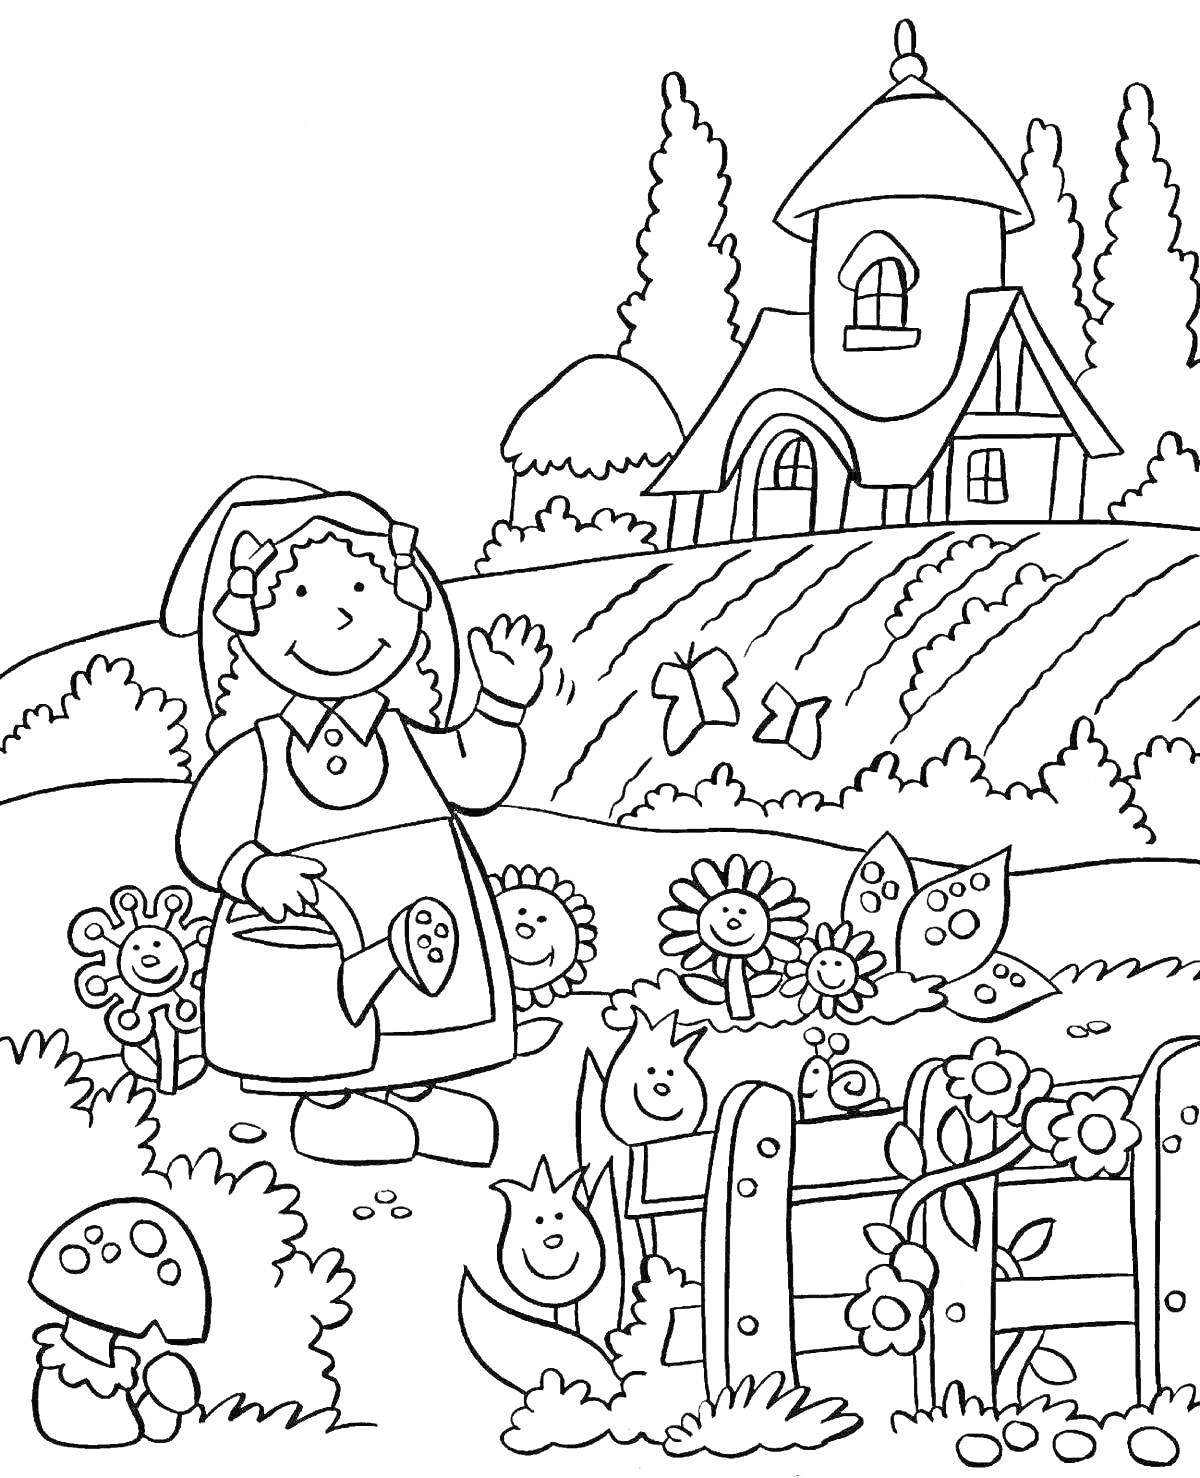 РаскраскаДевочка в саду с домом, цветами, бабочками и лейкой